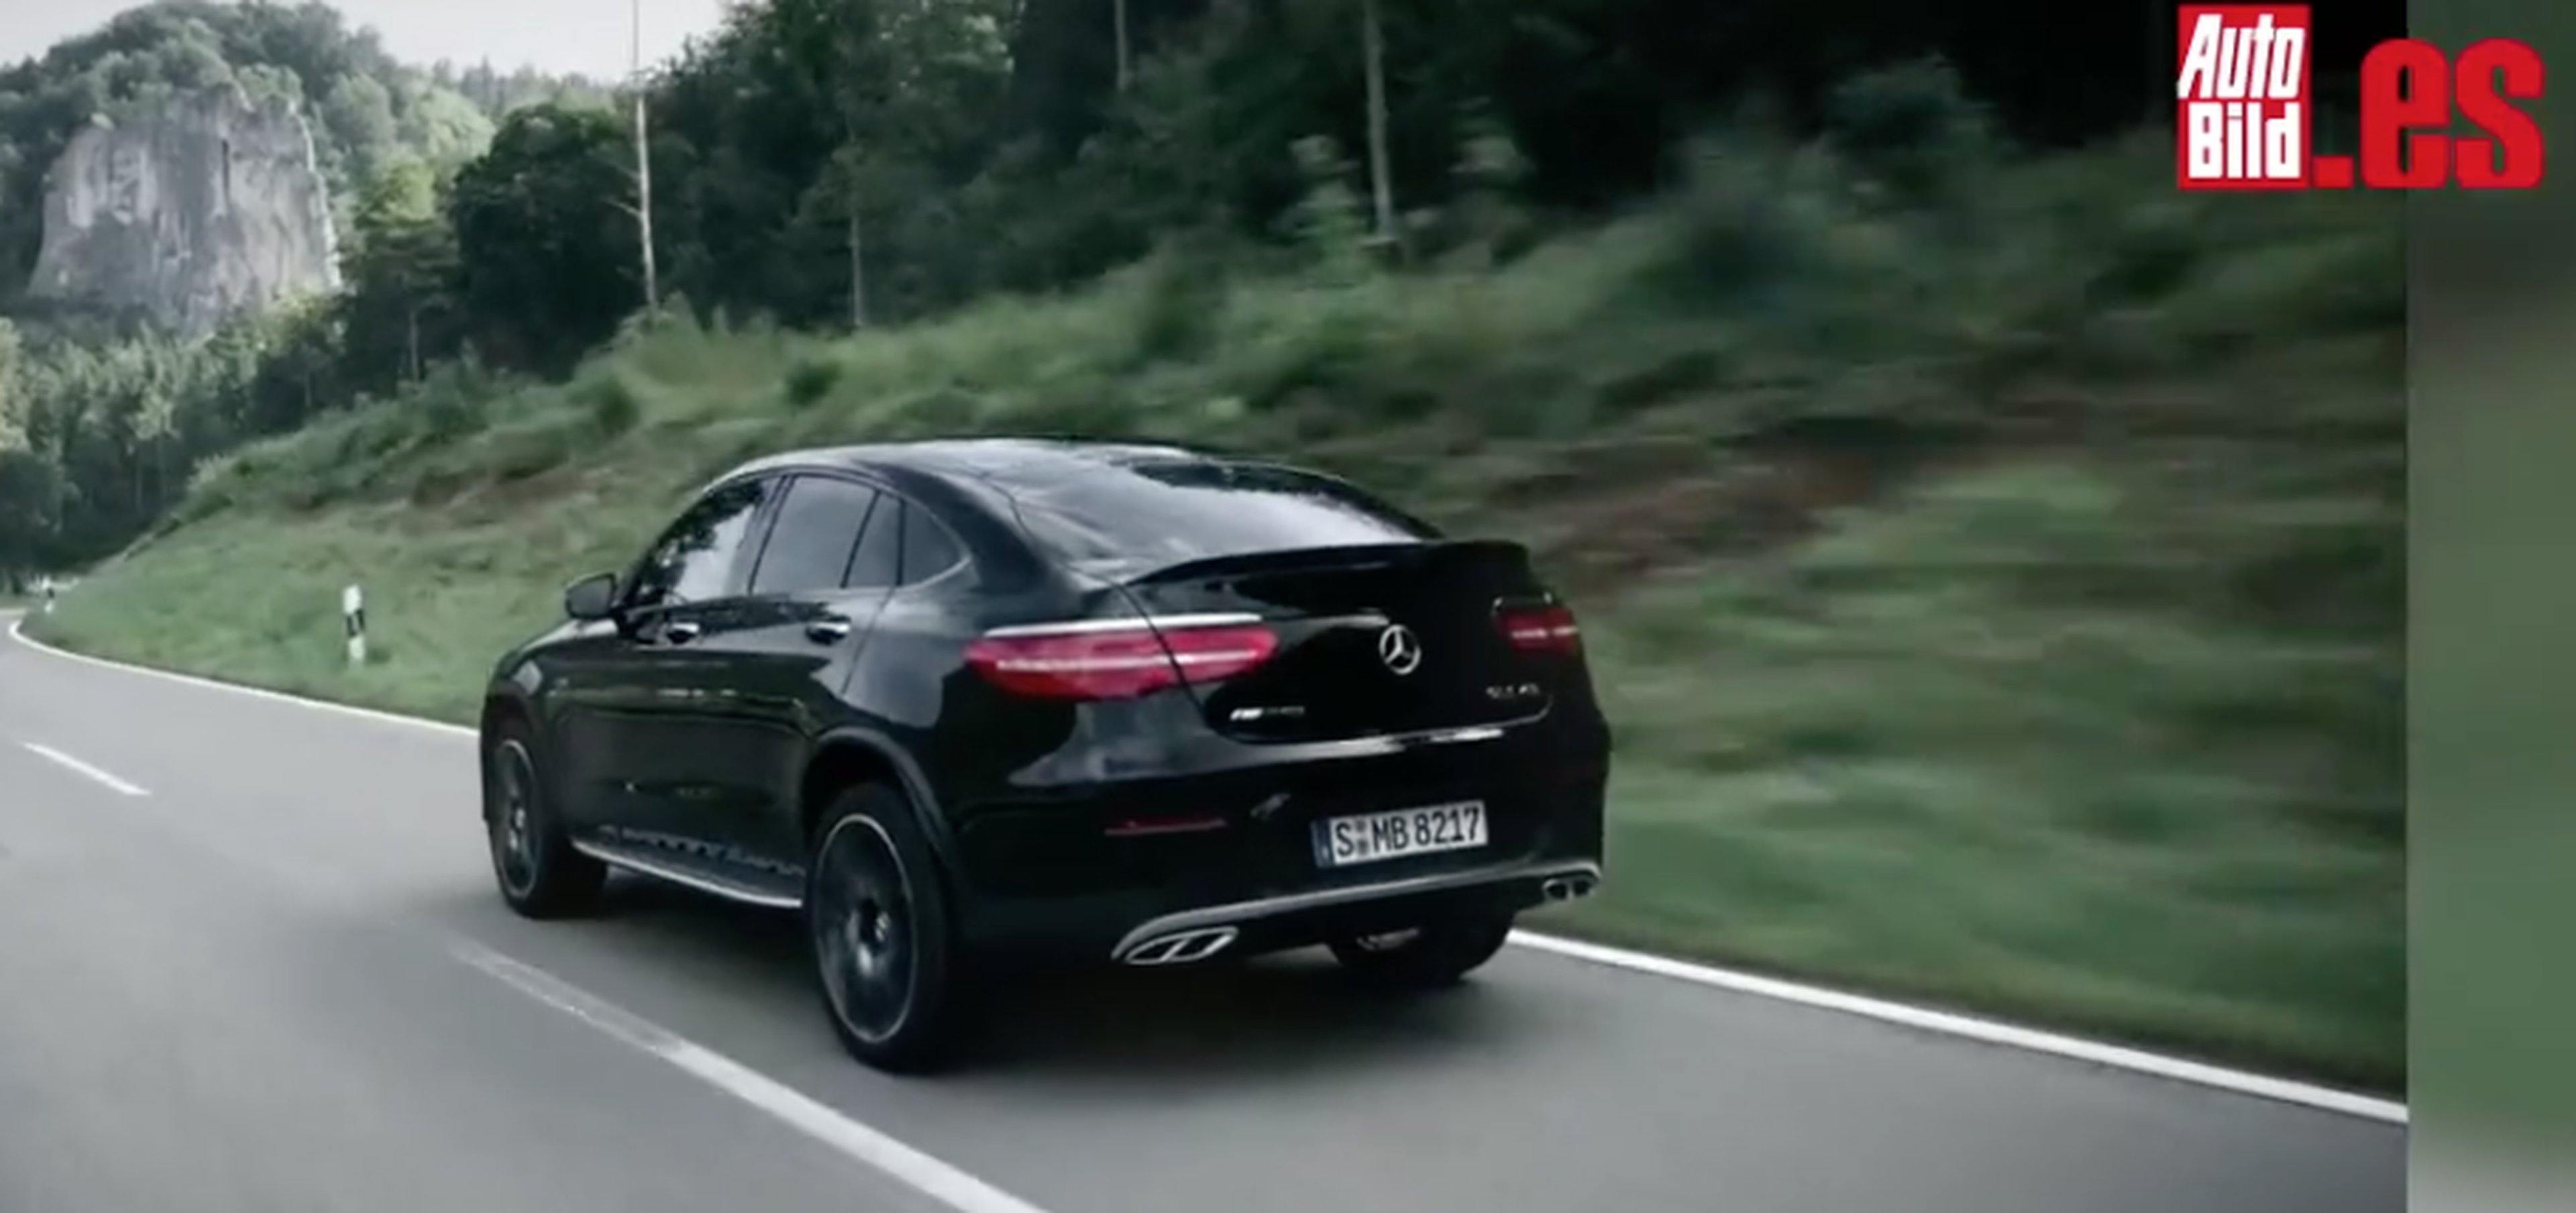 VÍDEO: Mercedes-AMG GLC 43 Coupé, ¡potencia a saco en acción!